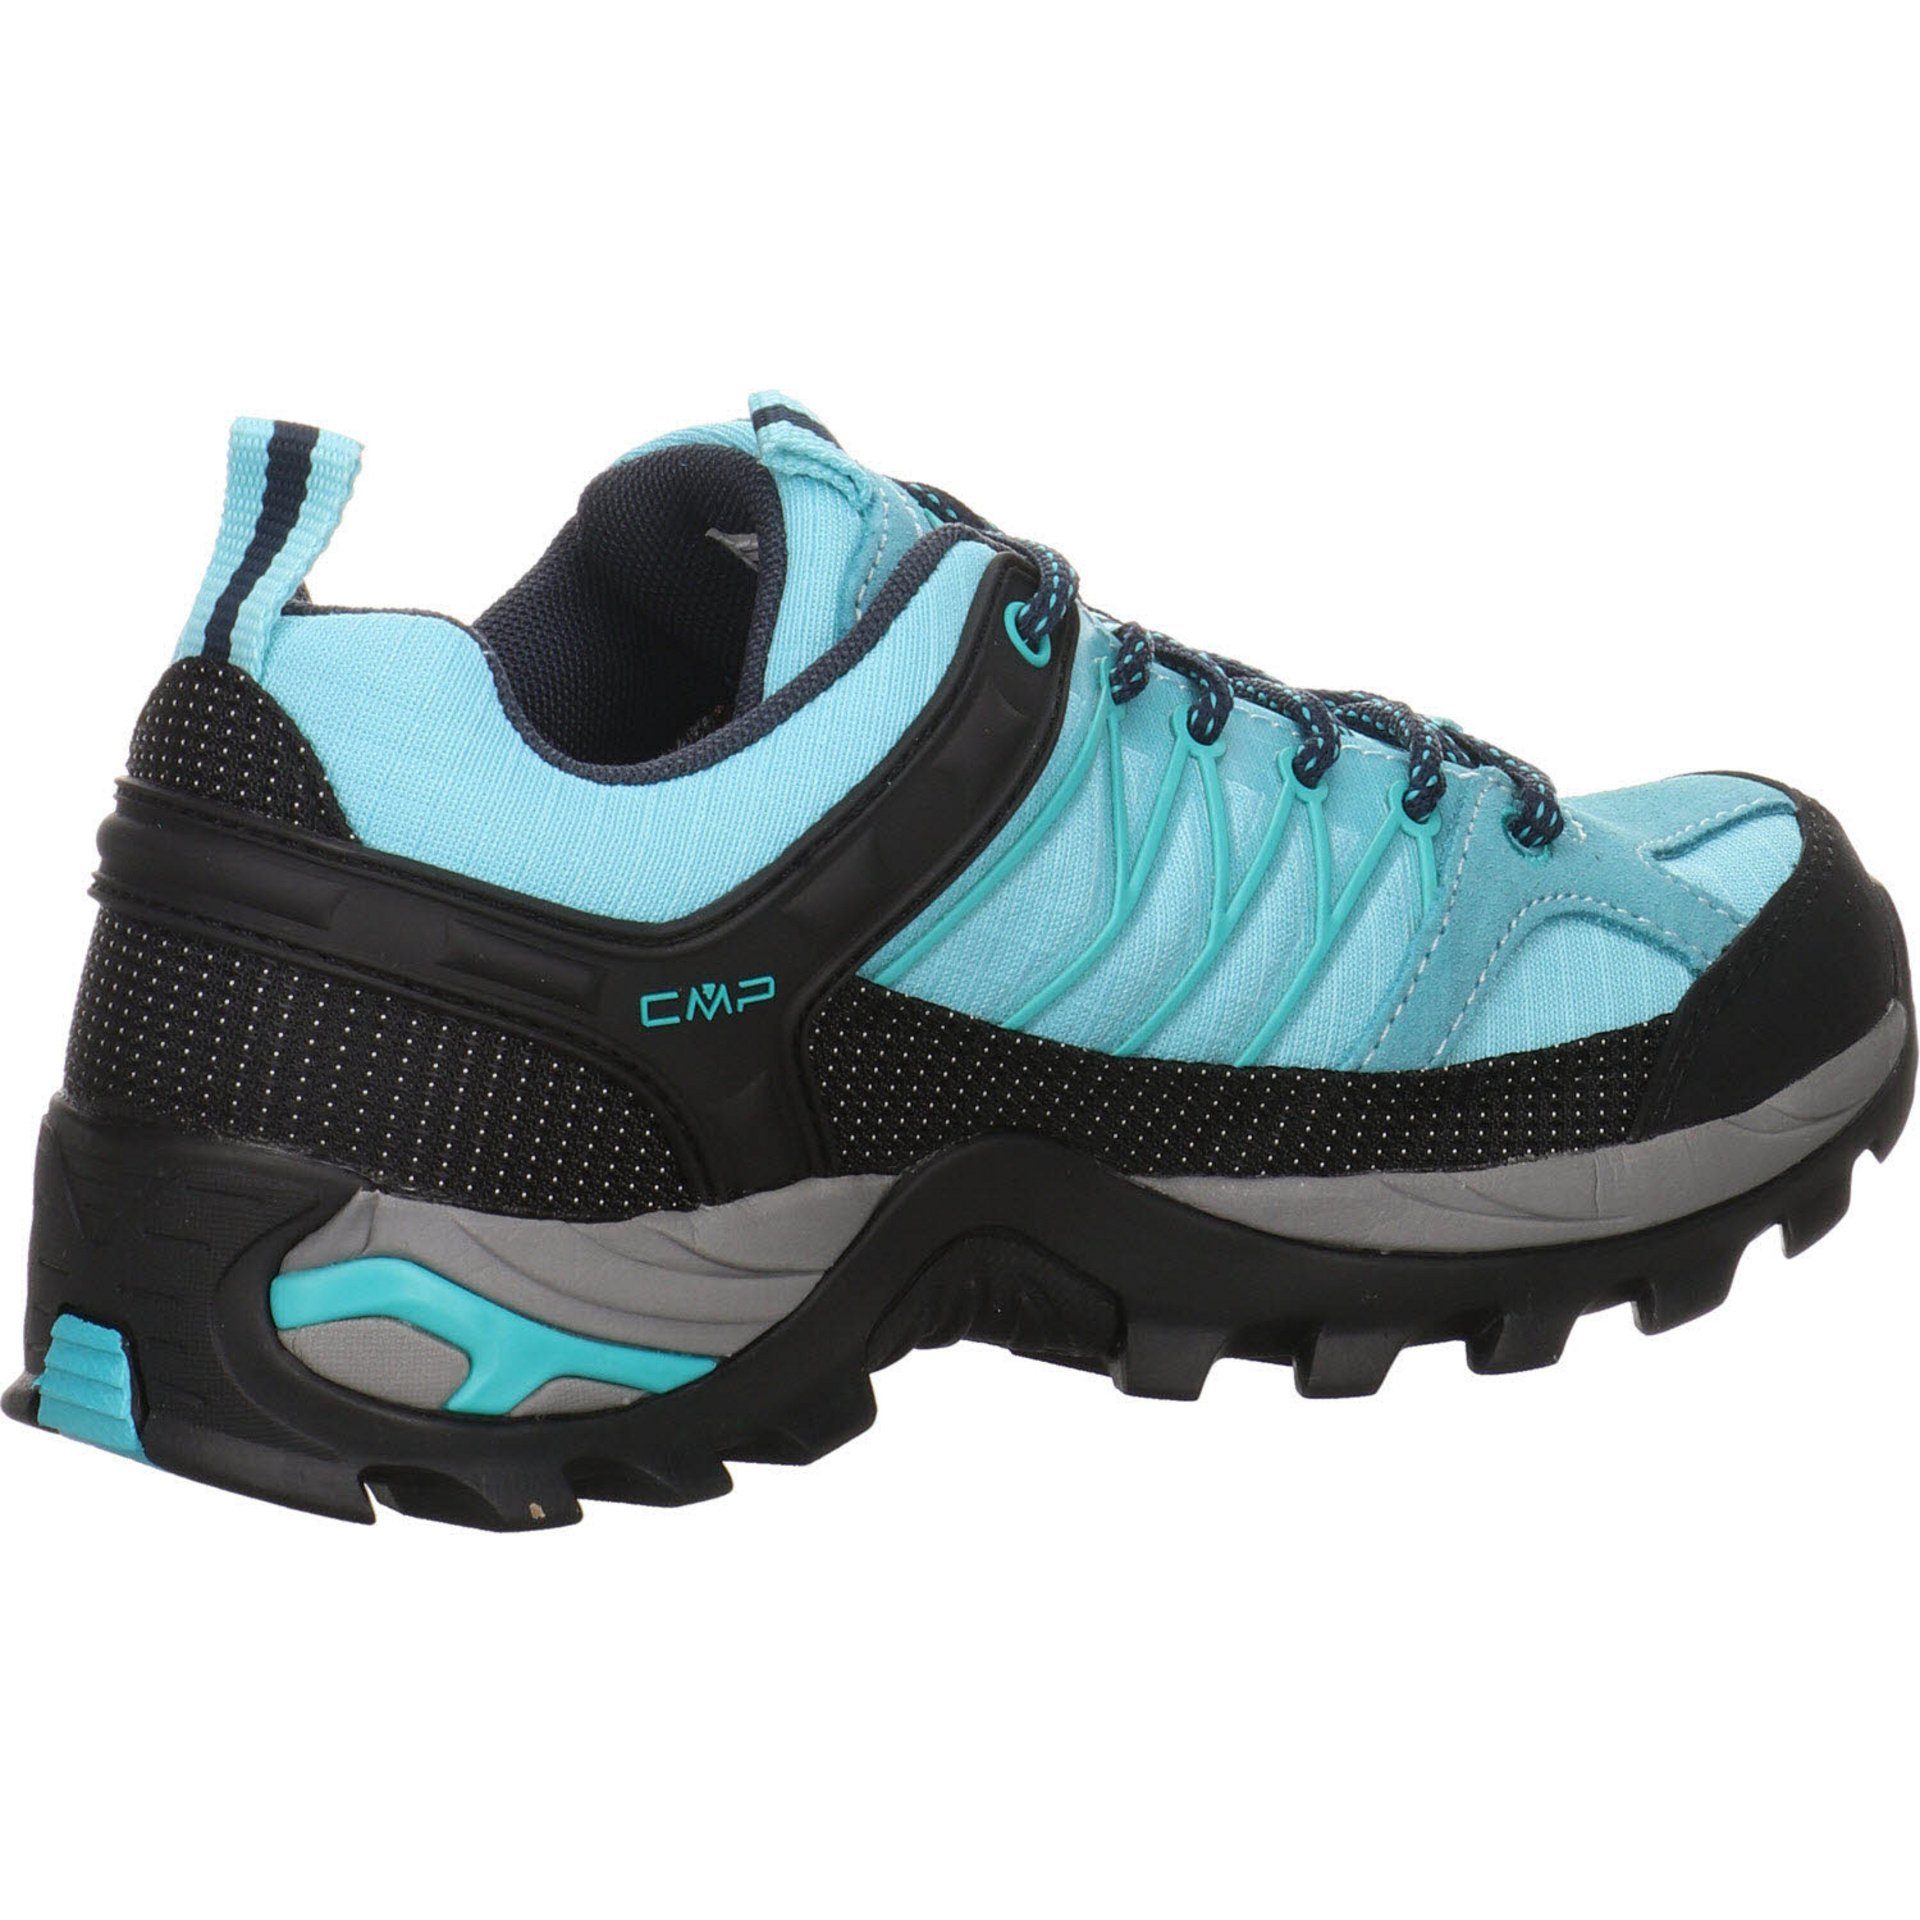 CMP Damen Schuhe Outdoorschuh Low Outdoor Synthetikkombination kombiniert Rigel Outdoorschuh blau mit